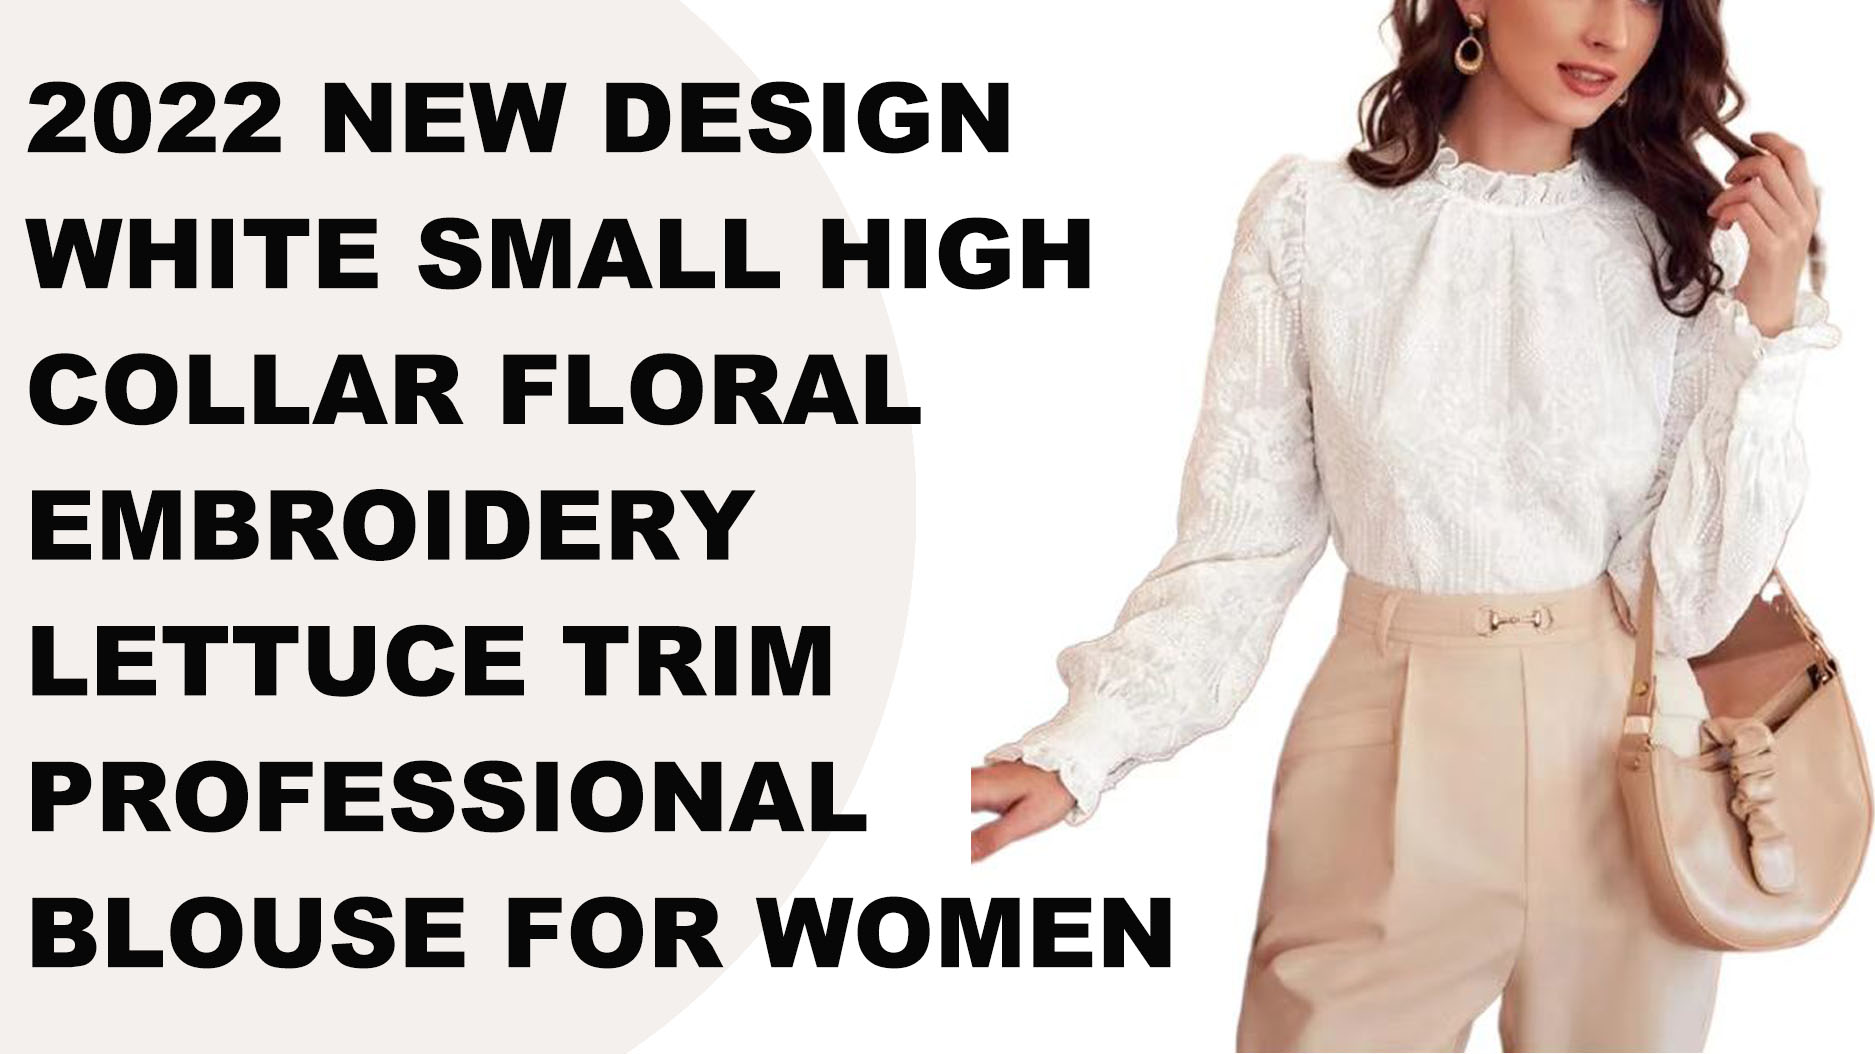 2022 Camicetta professionale da donna con bordo in lattuga ricamato floreale piccolo collo alto bianco di nuovo design